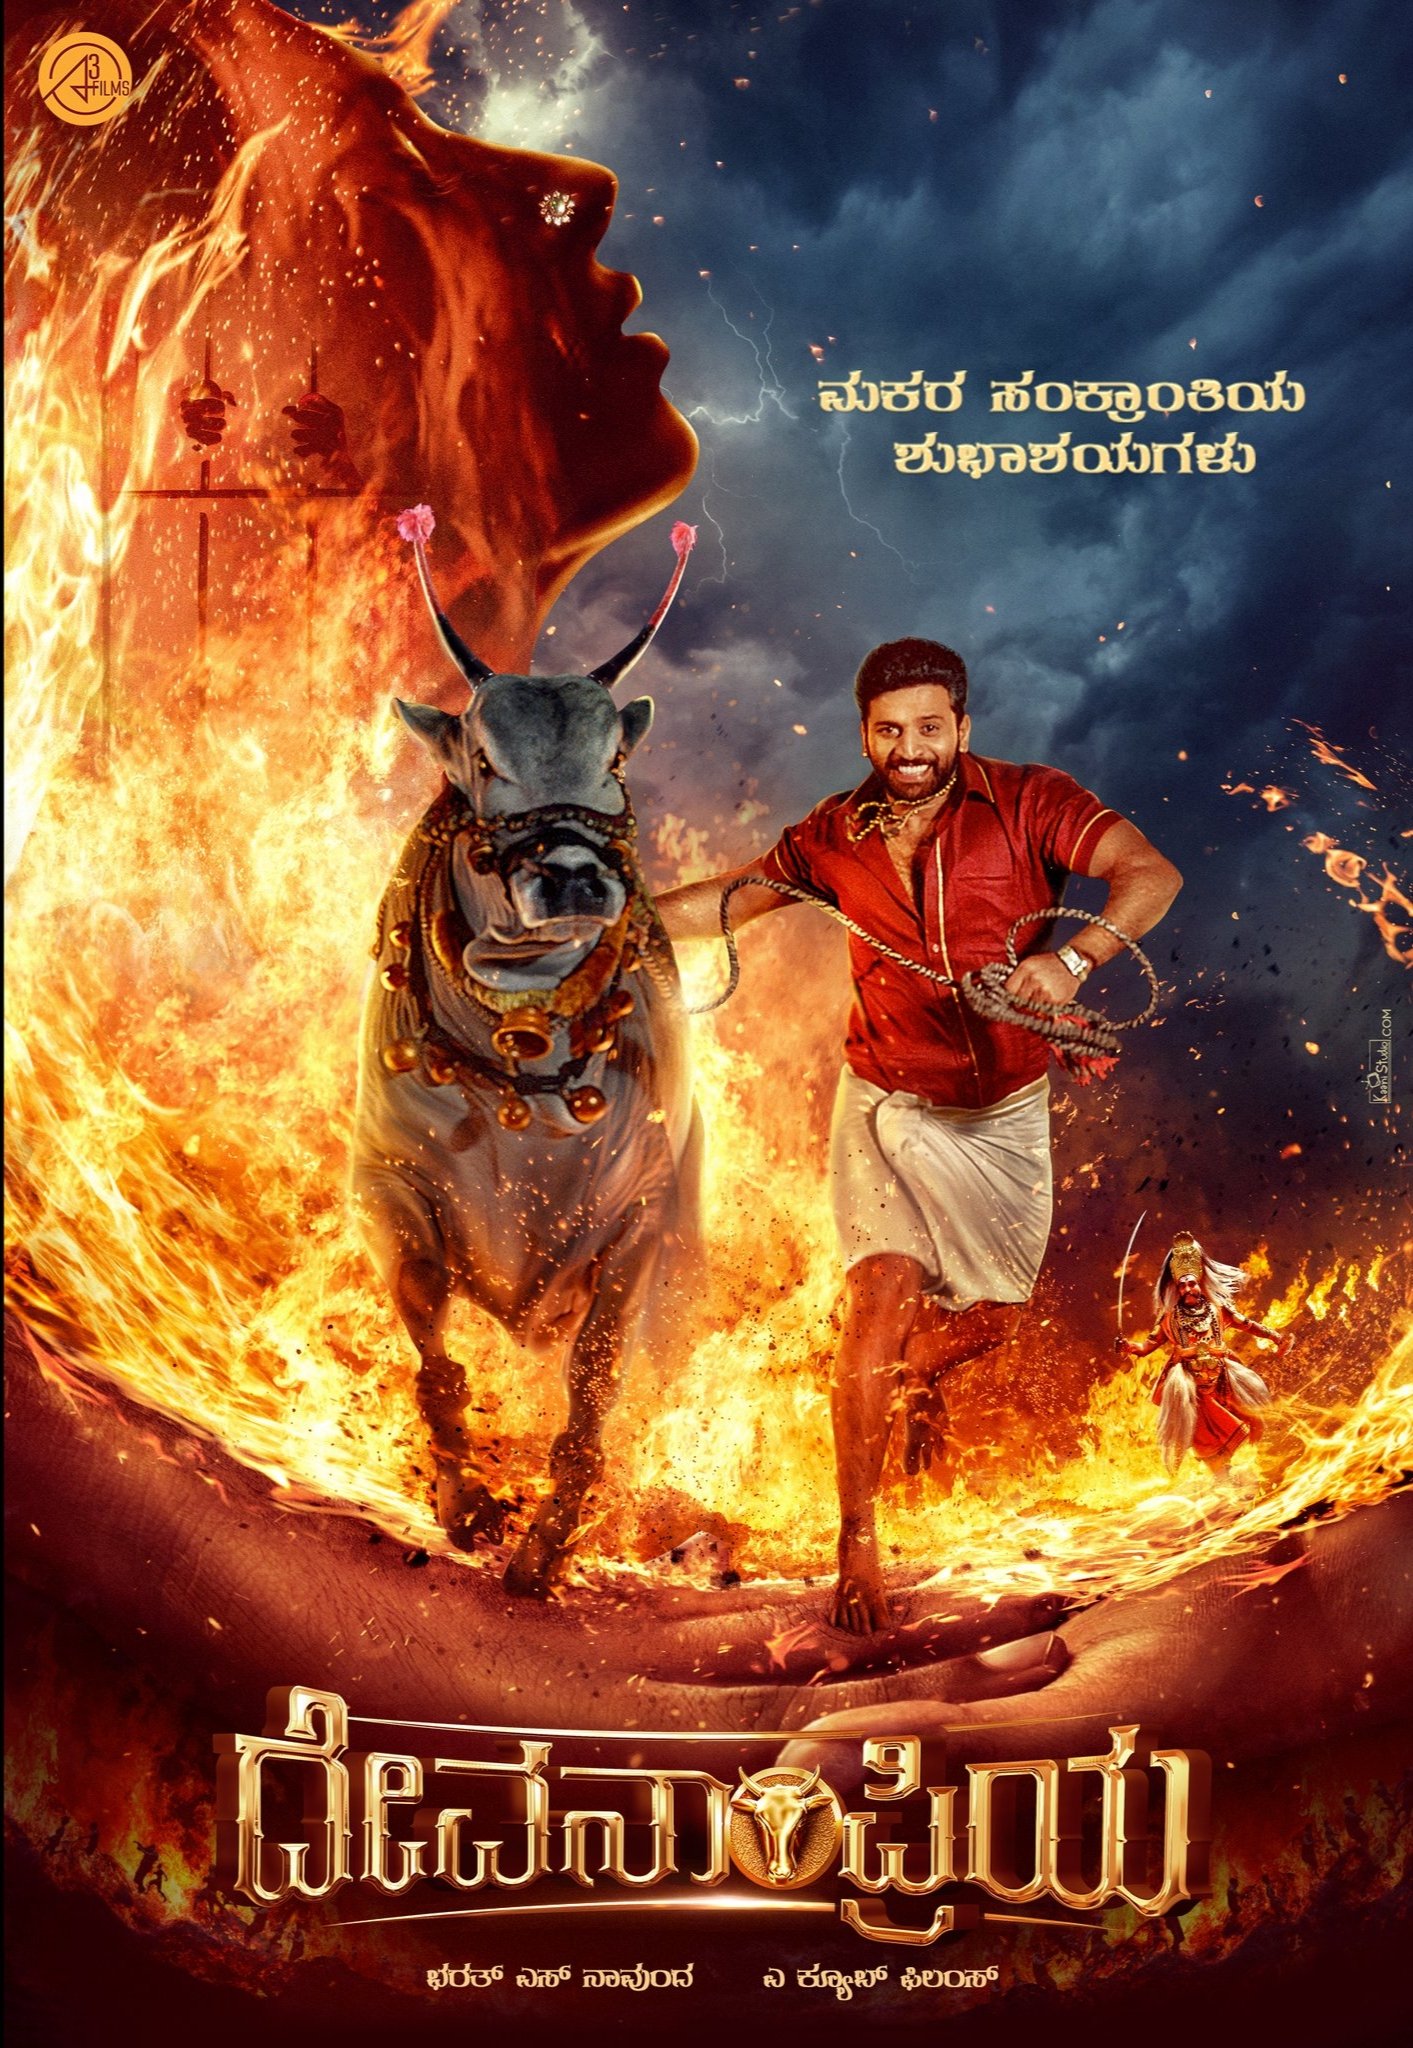 Thandav Ram's film as lead named Devanampriya